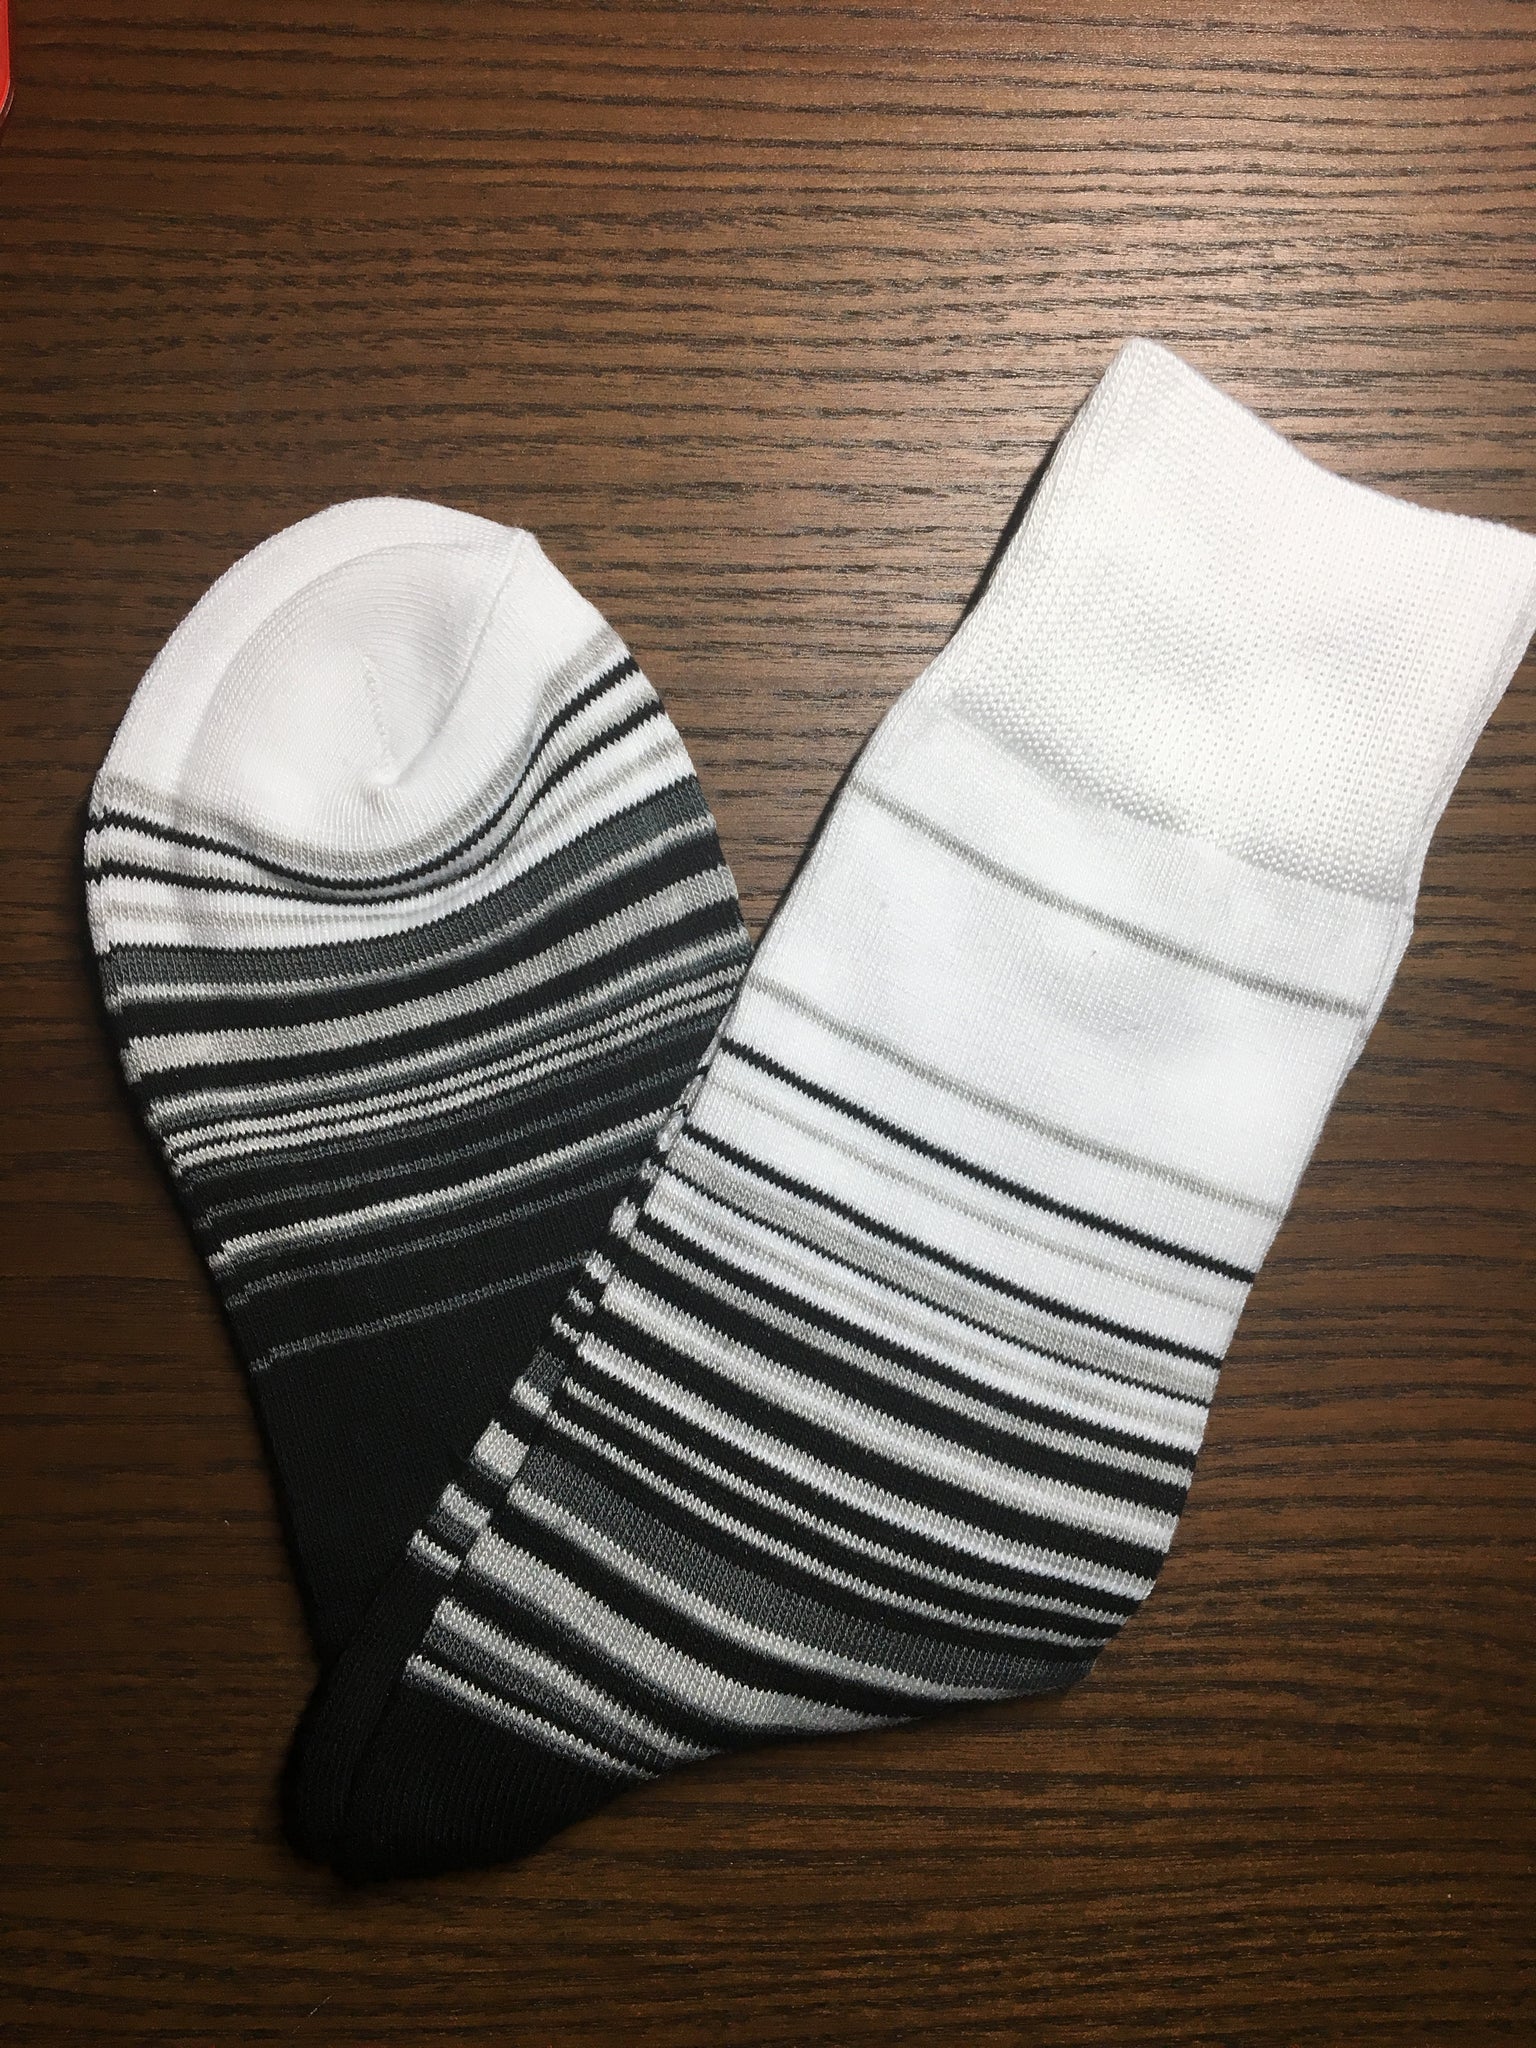 Black & White socks - Socksn'Ties